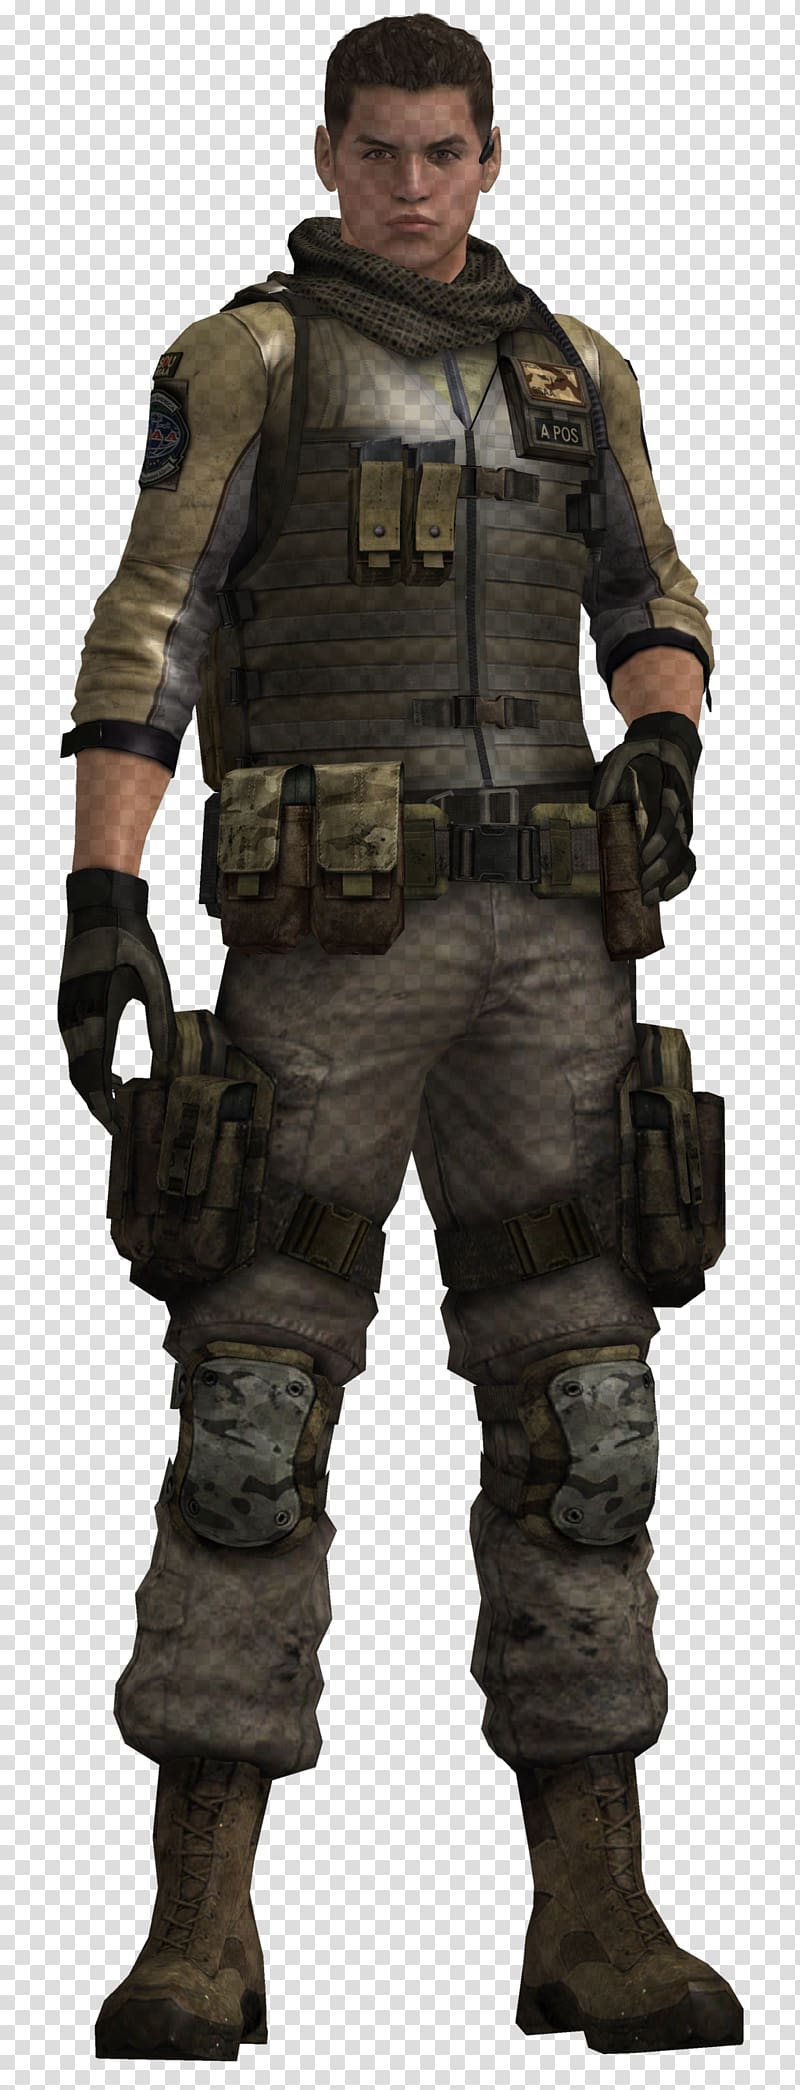 Resident Evil 6 Albert Wesker Soldier Piers Nivans Jake Muller, Soldier transparent background PNG clipart